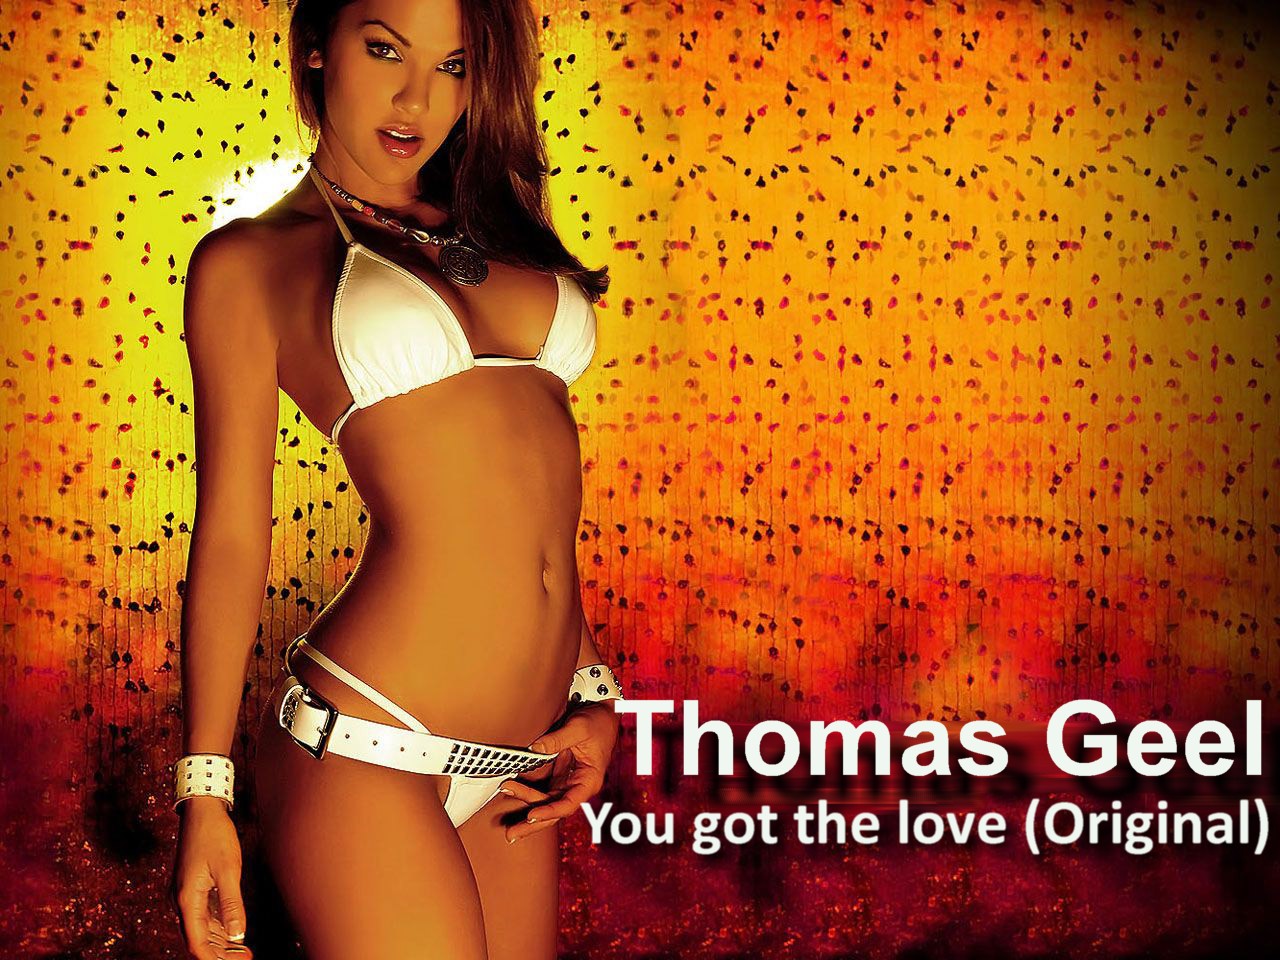 Thomas Geel - You got the love (Original)